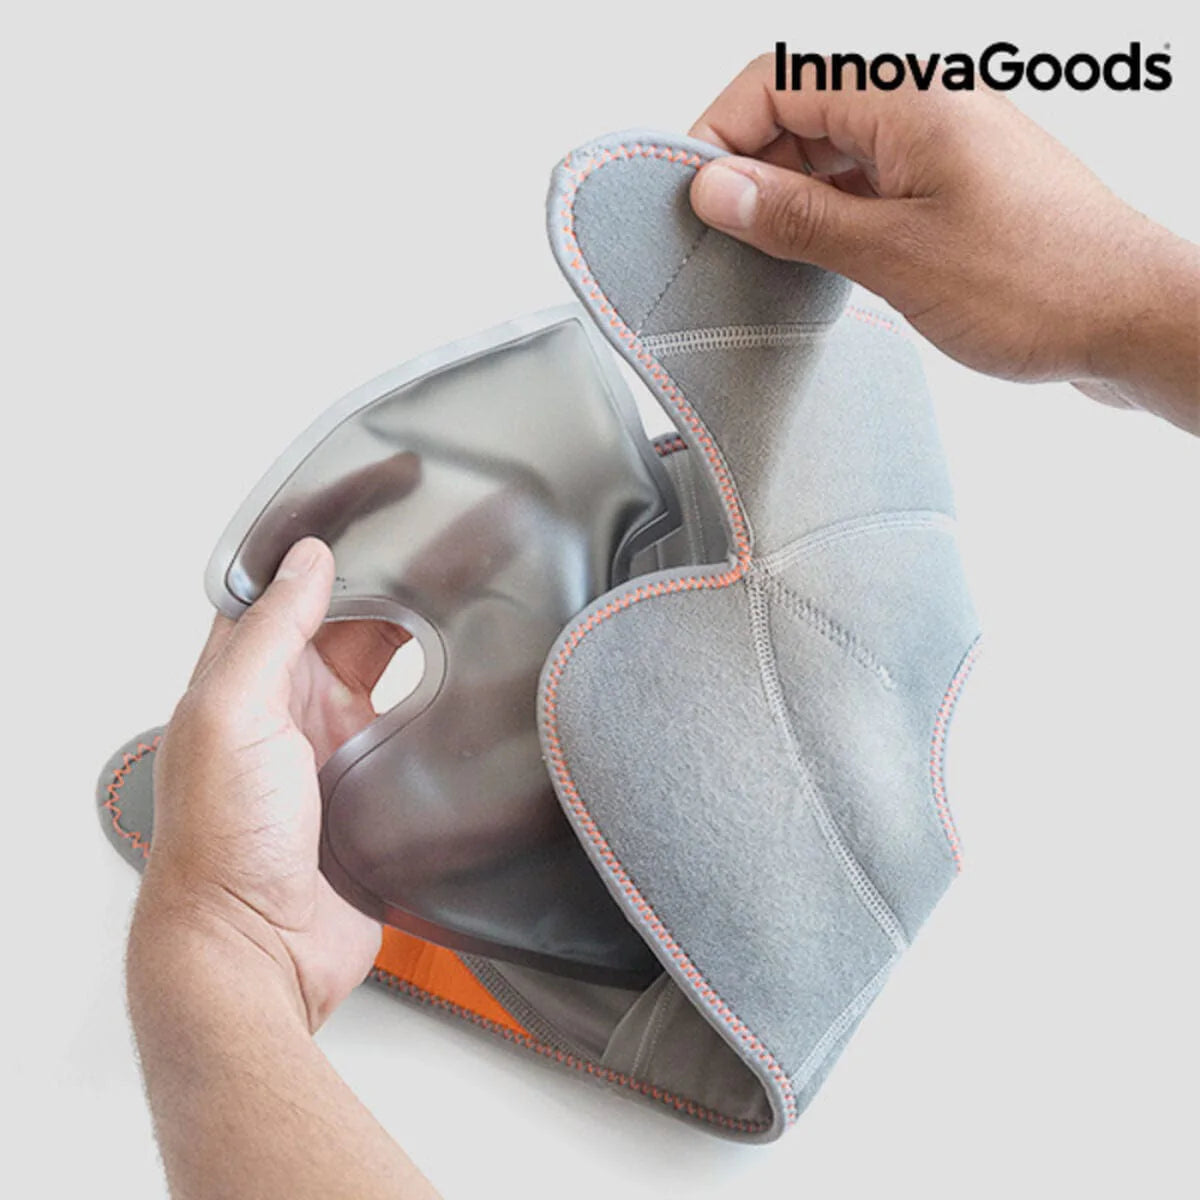 InnovaGoods Gesundheit | Beauty > Entspannung und Wellness > Entspannungsprodukte Knöchelbandage mit Wärme und Kälte Gelkissen Wralief InnovaGoods